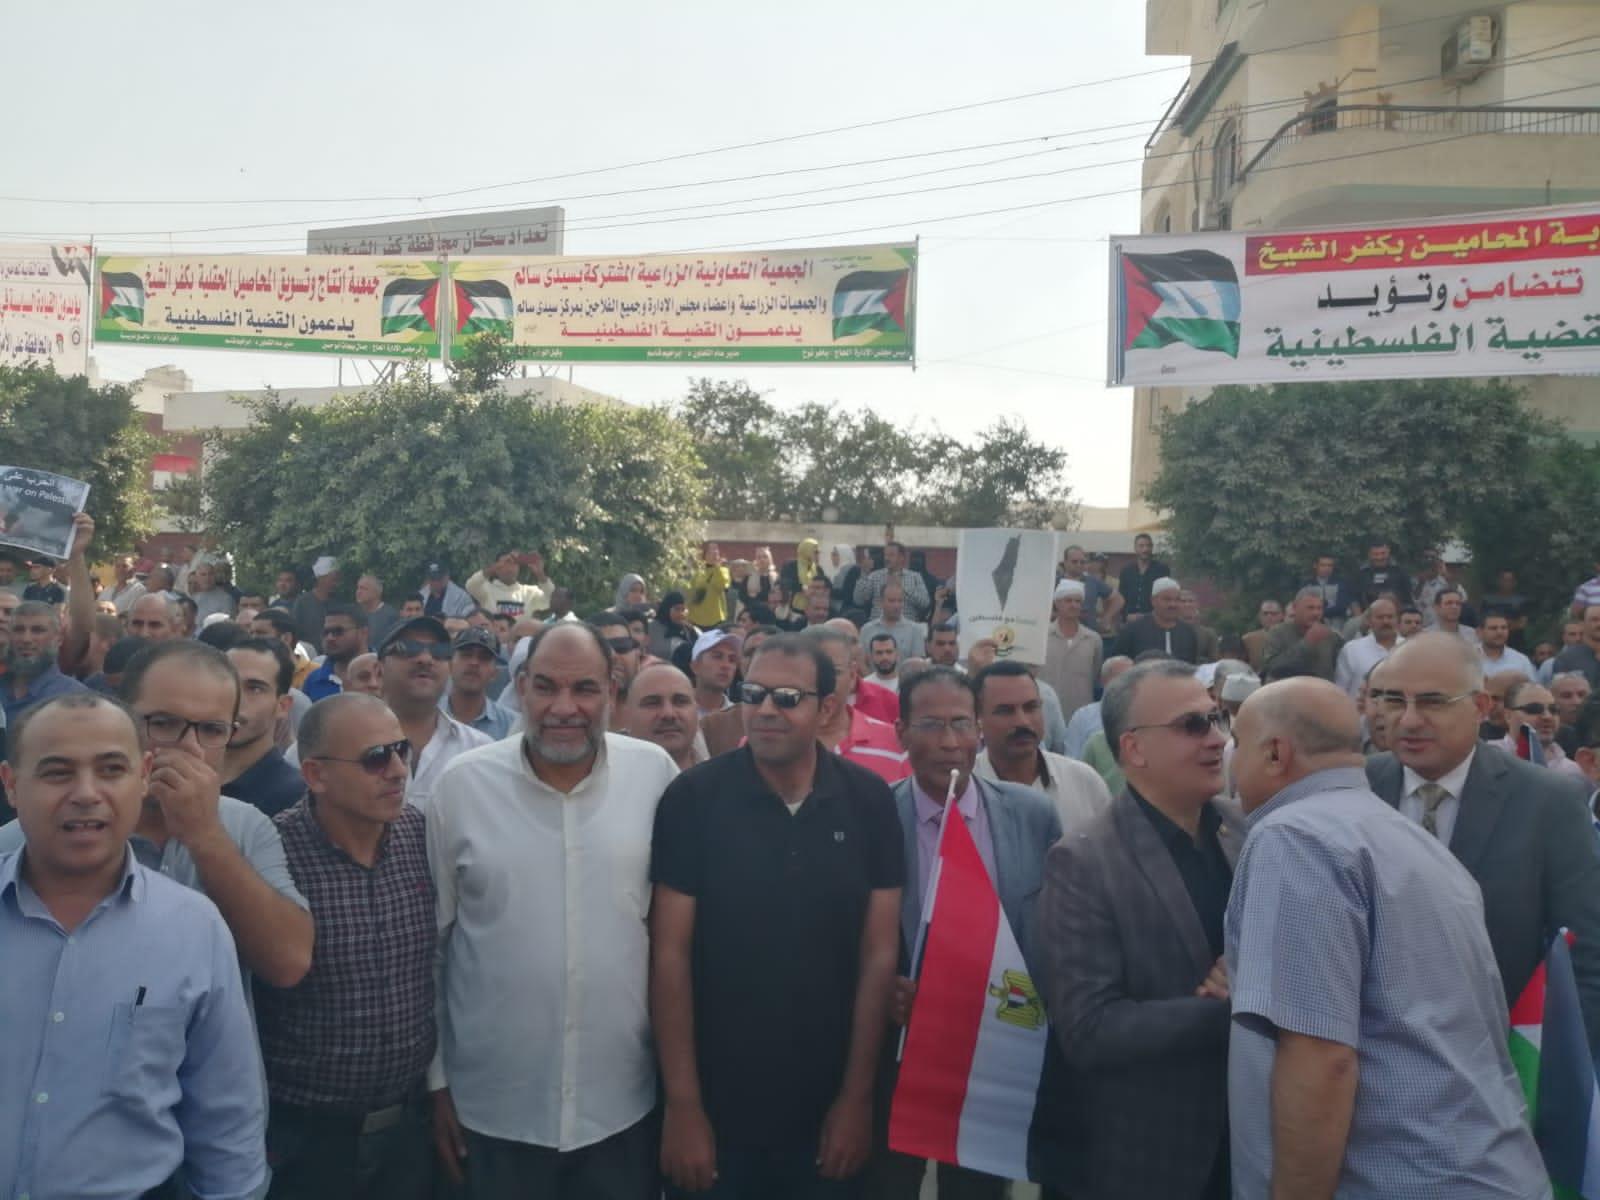 الحركة الوطنية بكفر الشيخ تشارك في مسيرات دعم فلسطين وترفض مخططات التوطين في سيناء 